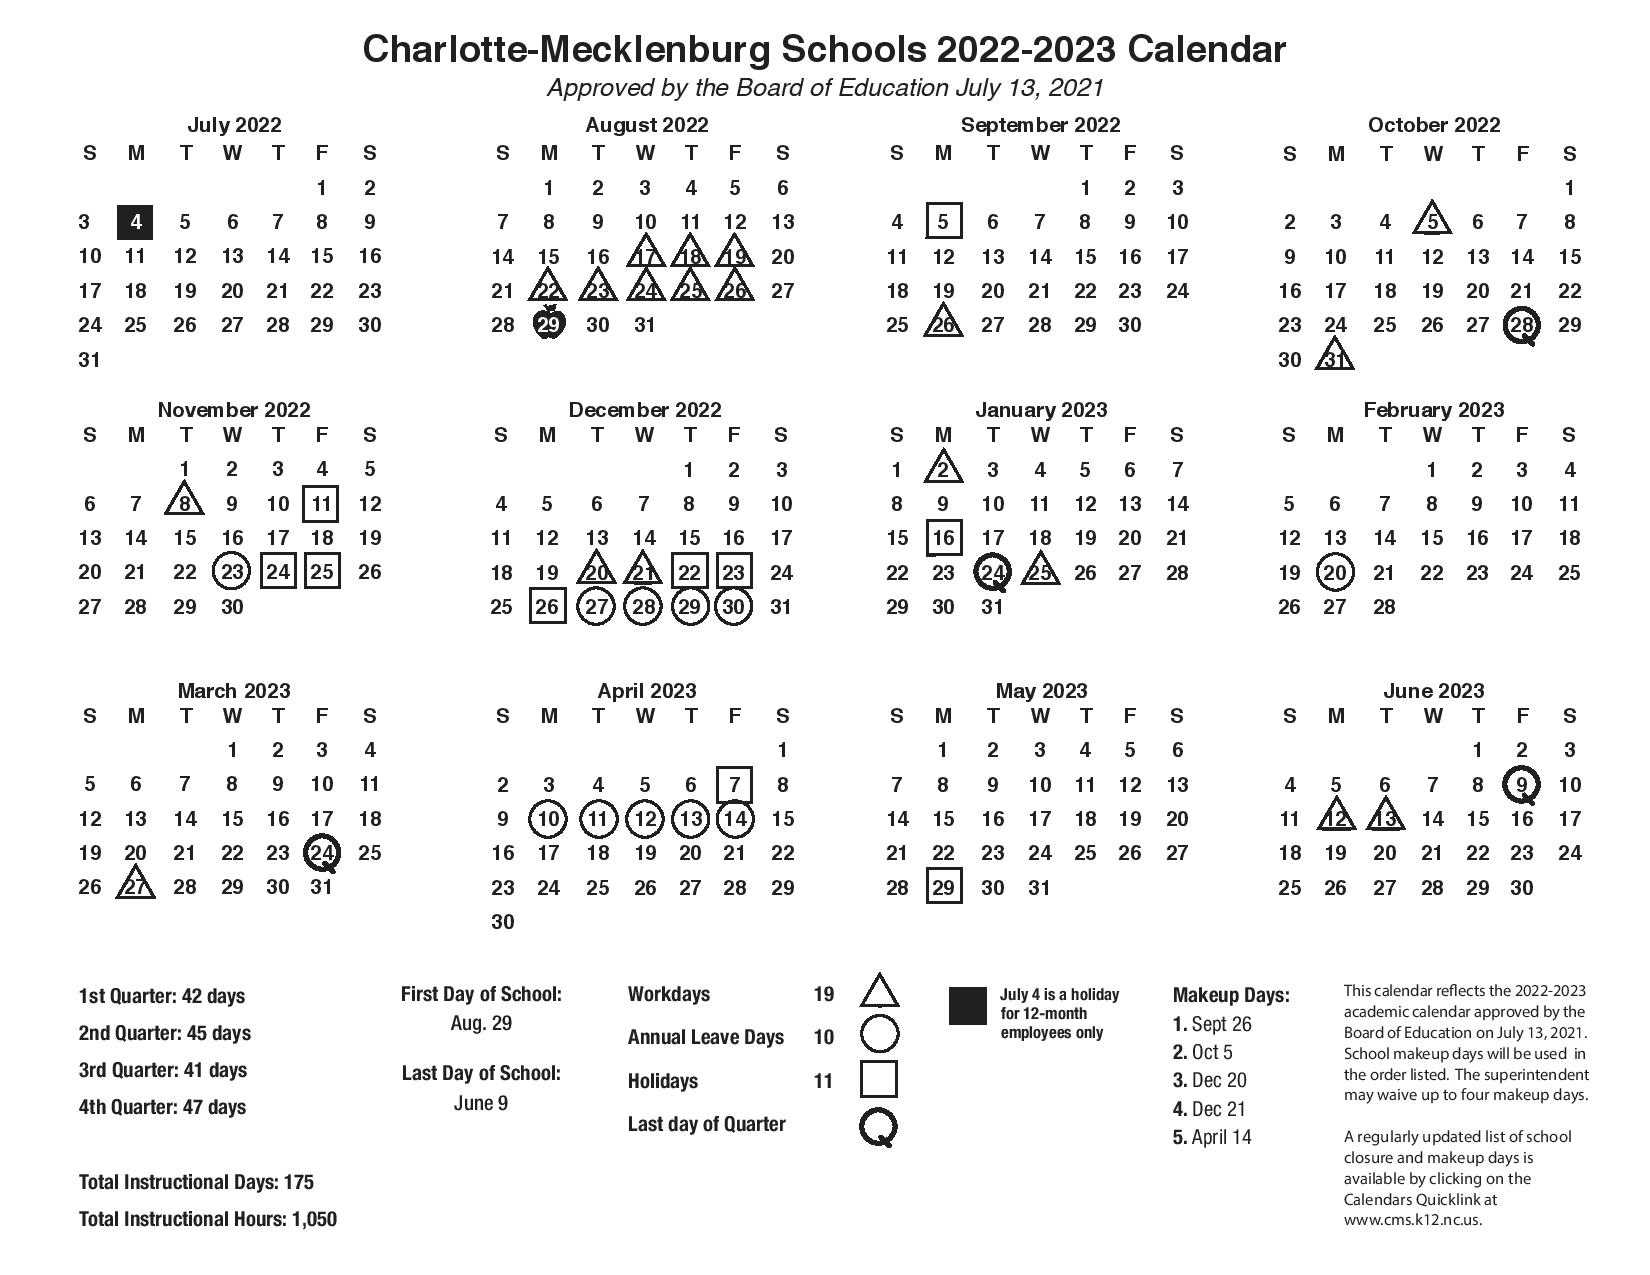 cms-schools-calendar-2023-charlotte-mecklenburg-schools